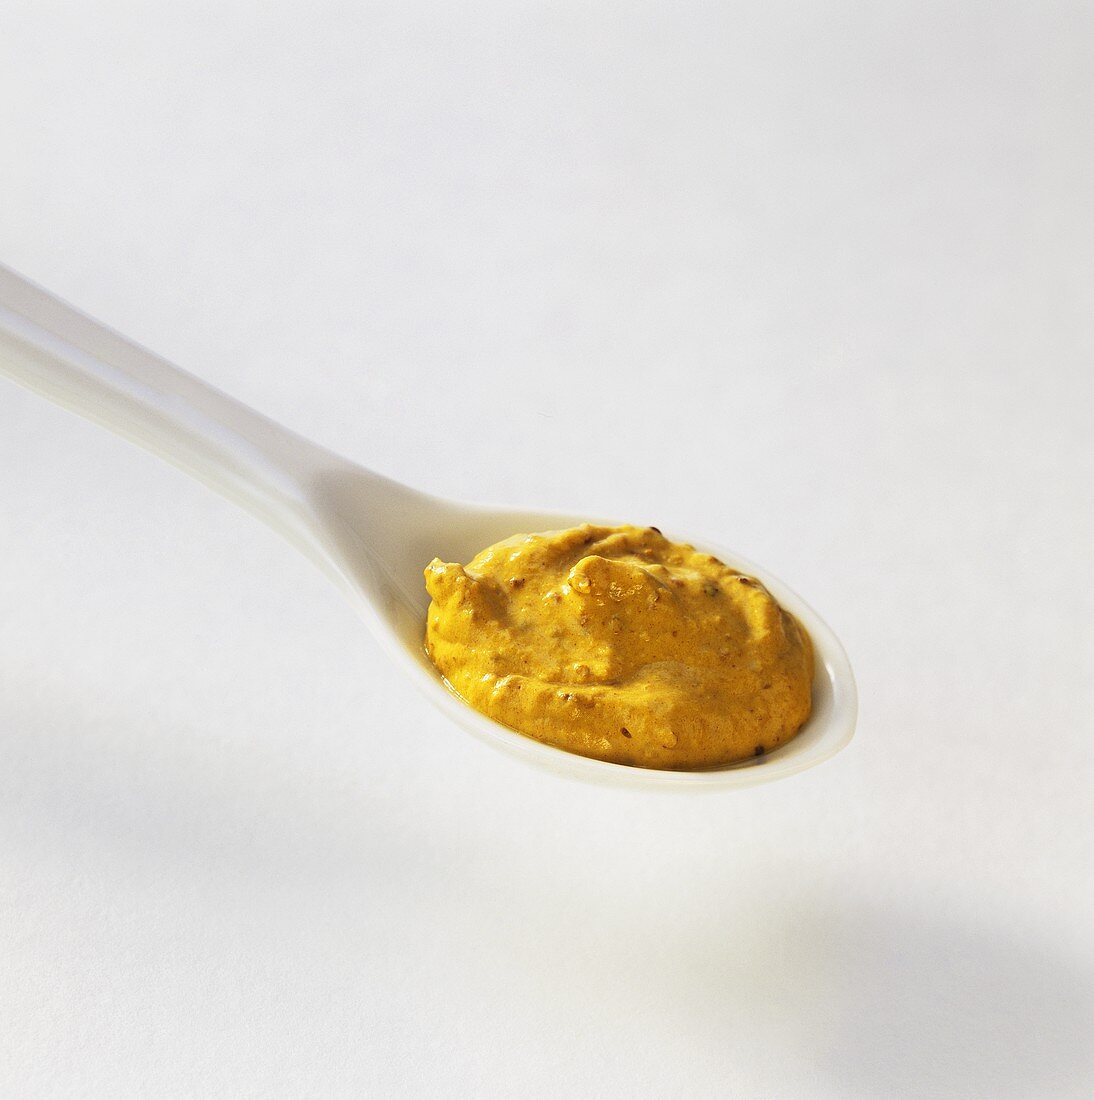 Mustard on a spoon